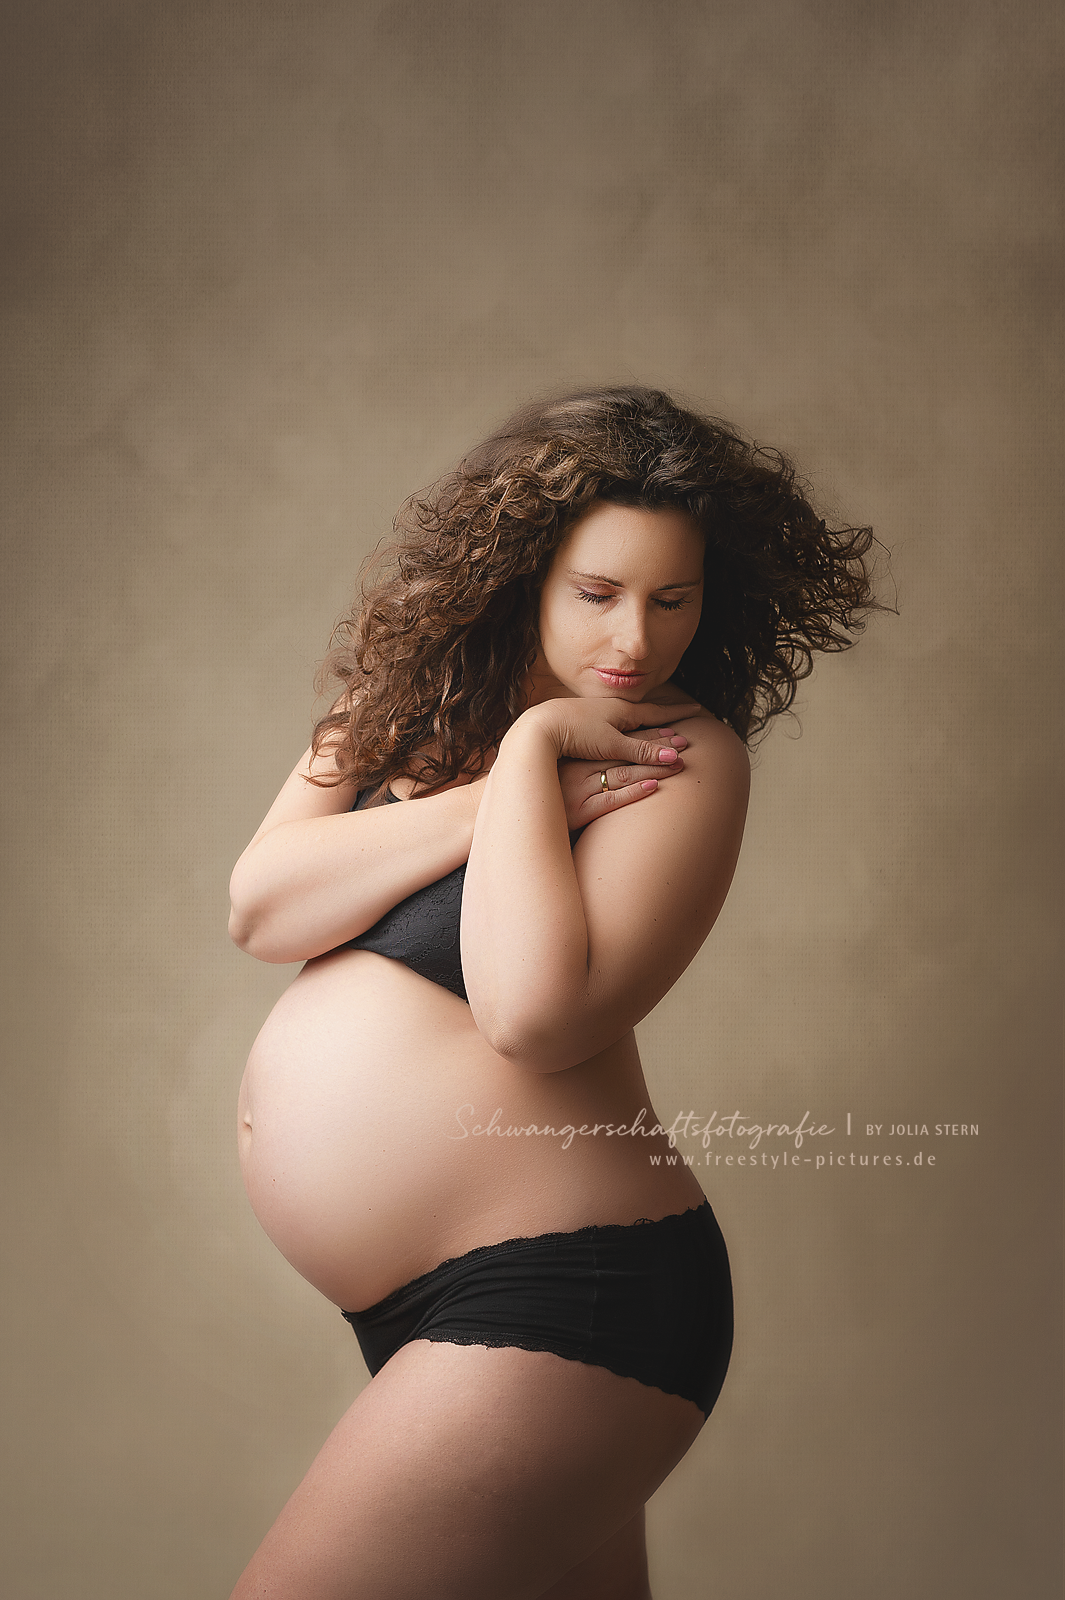 Bilder Jolia Stern Fotografie Neugeborenenfotografie